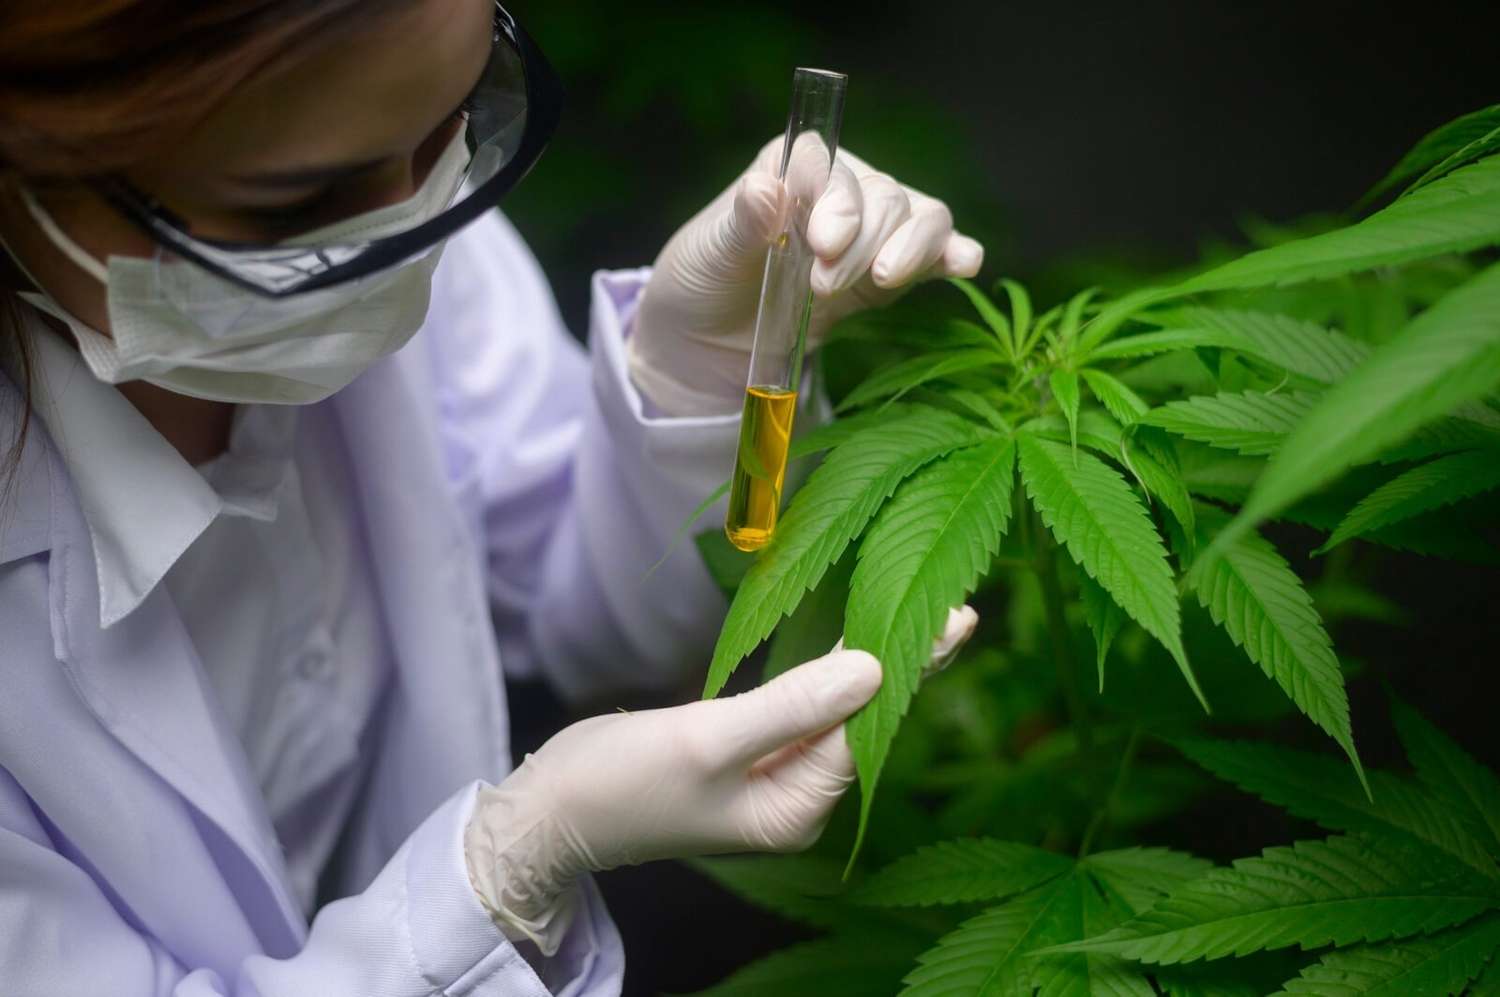 Un nuevo estudio comprobó los beneficios de tratamiento con cannabis medicinal.